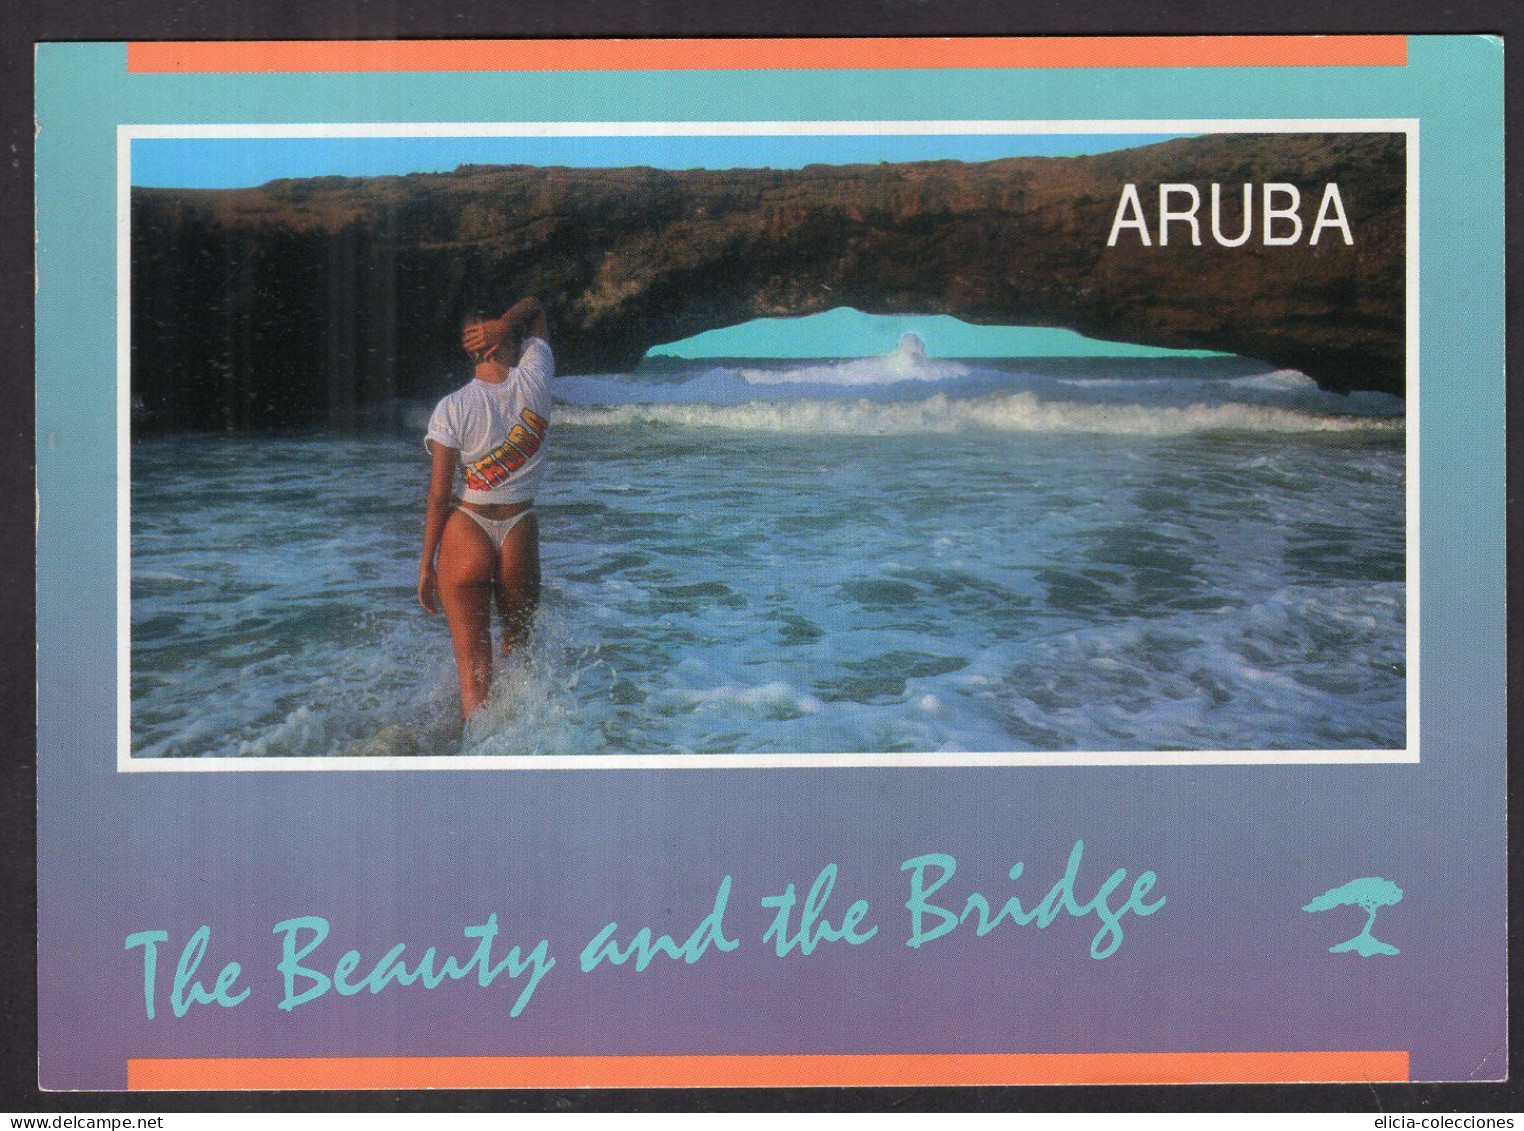 Aruba - Natural Bridge - Caja 1 - Aruba